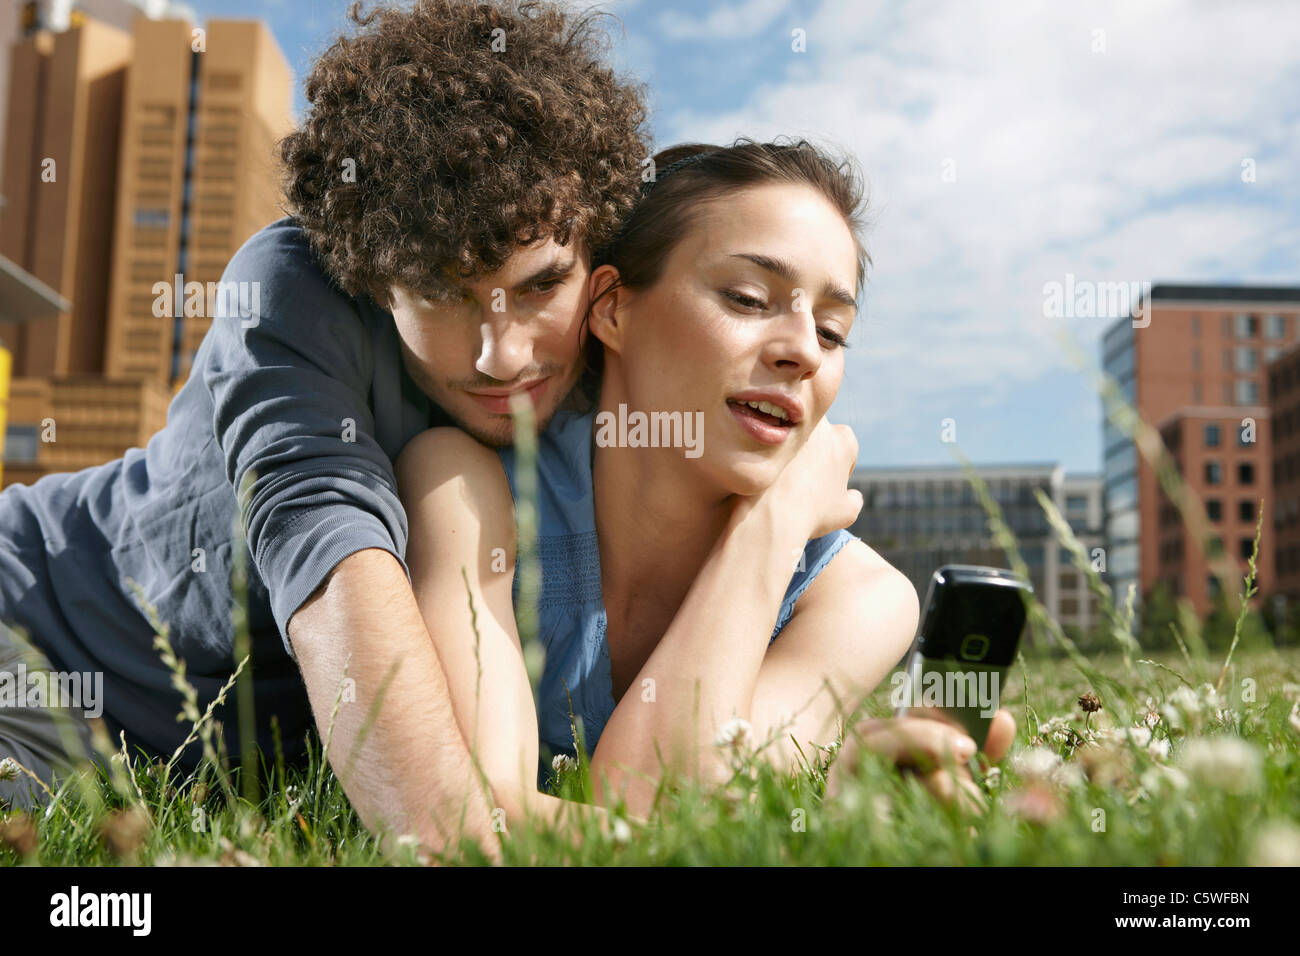 Germania Berlino giovane coppia giacendo in prato, donna tenendo il telefono cellulare, ritratto, close-up Foto Stock